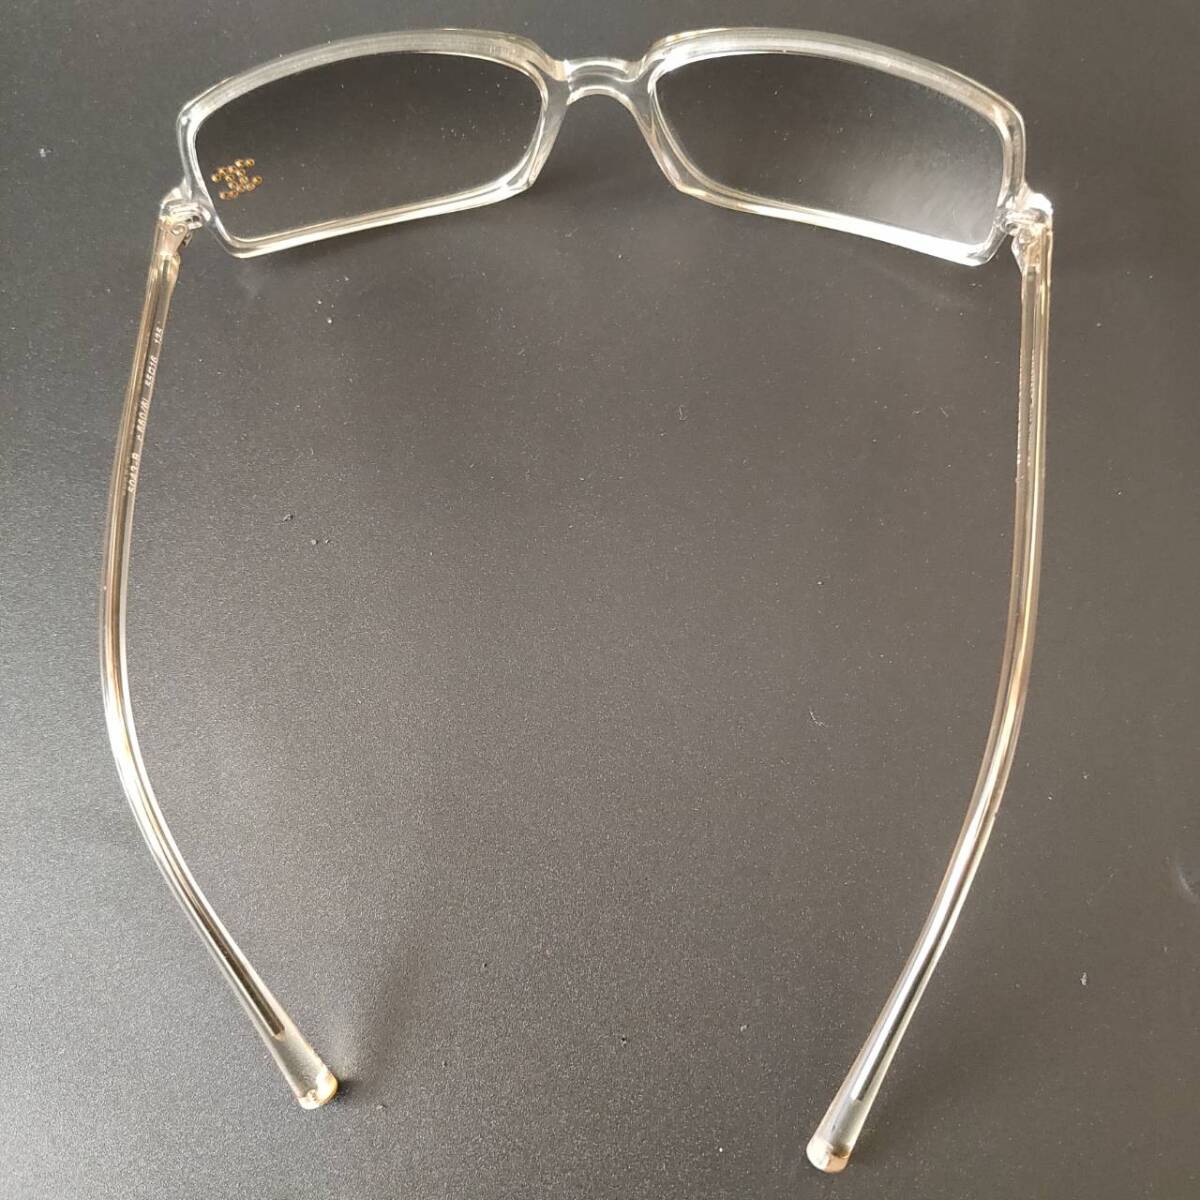 1 jpy ~[ box attaching / beautiful goods ] Chanel CHANEL sunglasses glasses glasses I wear glasses glasses here Mark rhinestone men's business 